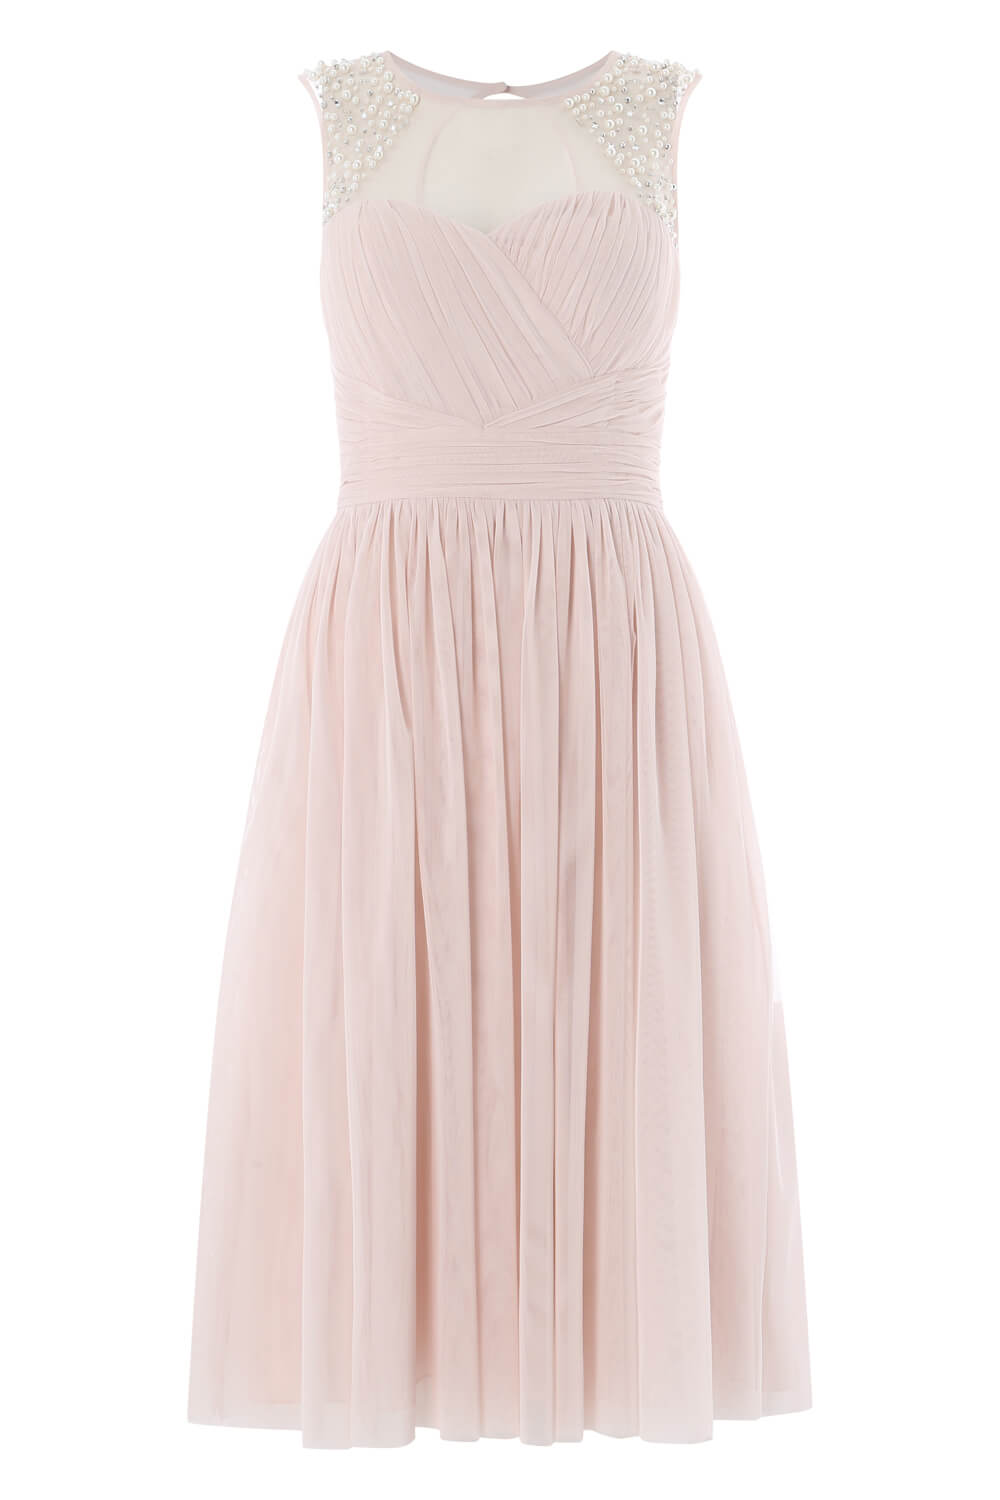 Light Pink Bead Embellished Knee Length Dress, Image 5 of 5